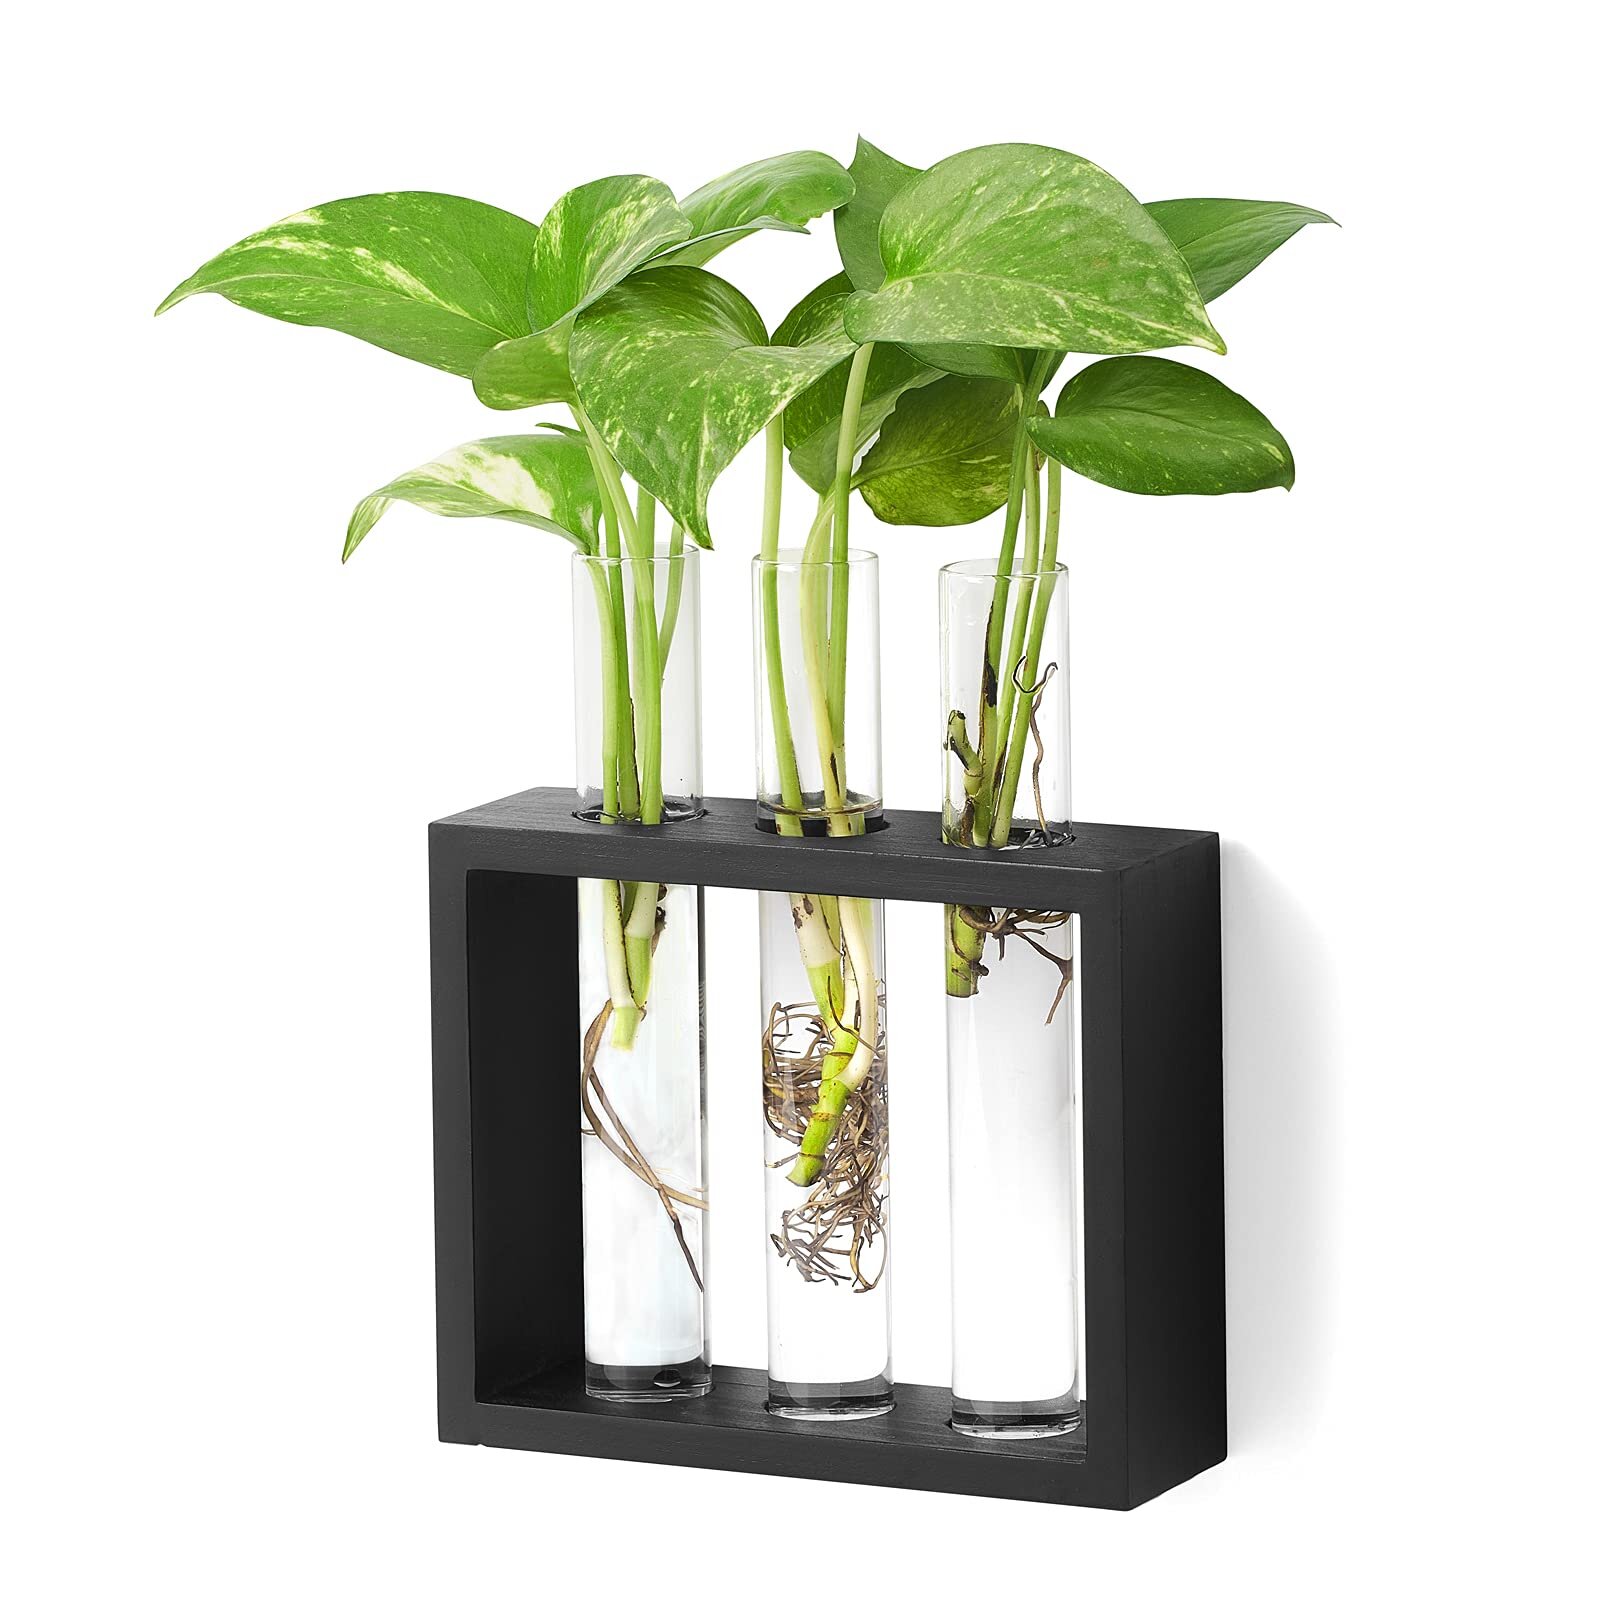 Planter Test Tube Flower Bud Vase Tabletop Glass Terrariumin w/ Stand 1 Vase 